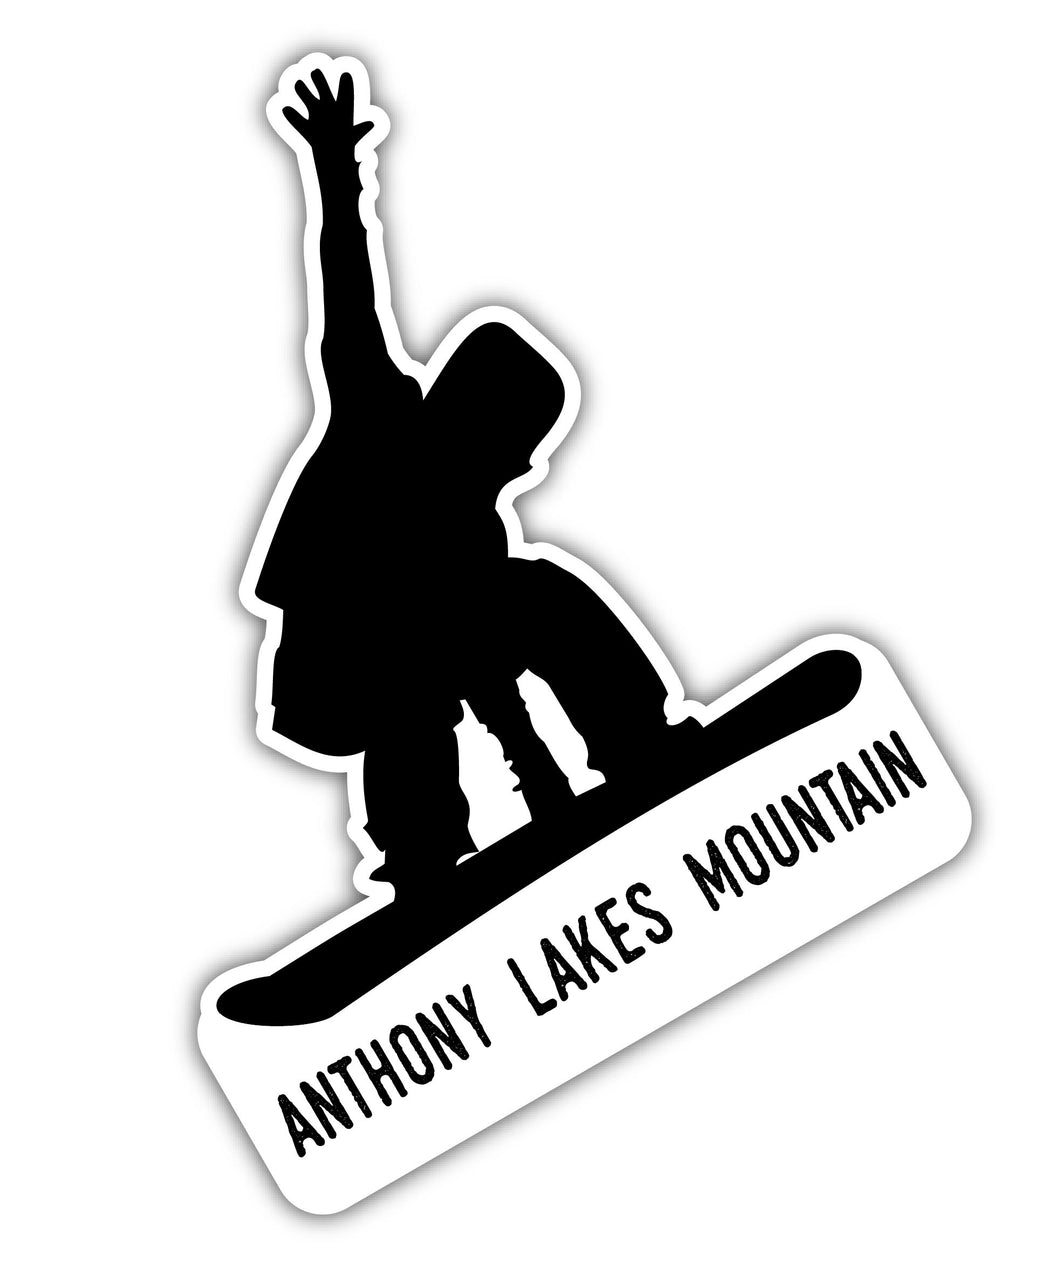 Anthony Lakes Mountain Oregon Ski Adventures Souvenir Approximately 5 x 2.5-Inch Vinyl Decal Sticker Goggle Design